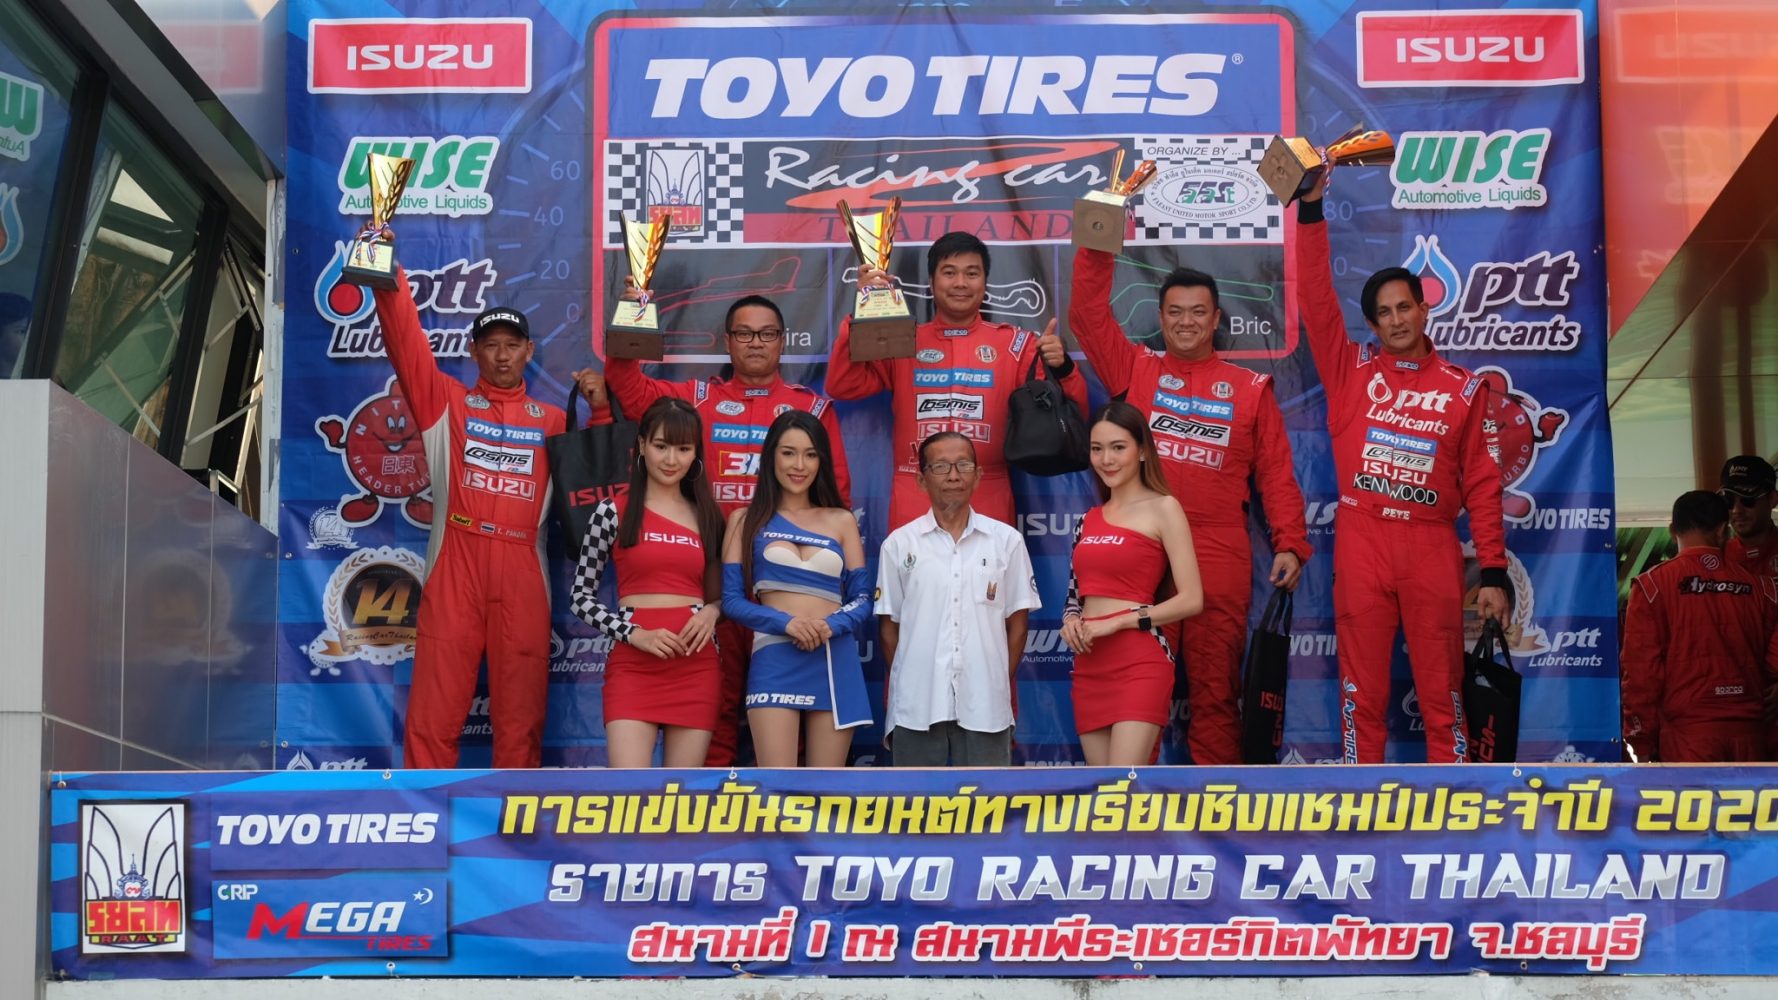 ภาพข่าว: TOYO TIRES RACING CAR THAILAND 2020 สนามที่ 1 ISUZU 1 MAKE RACE ดันกันสุดราง Toyo R888R โชว์ประสิทธิภาพ พา สมร ขึ้นแท่นคว้าโพเดียม